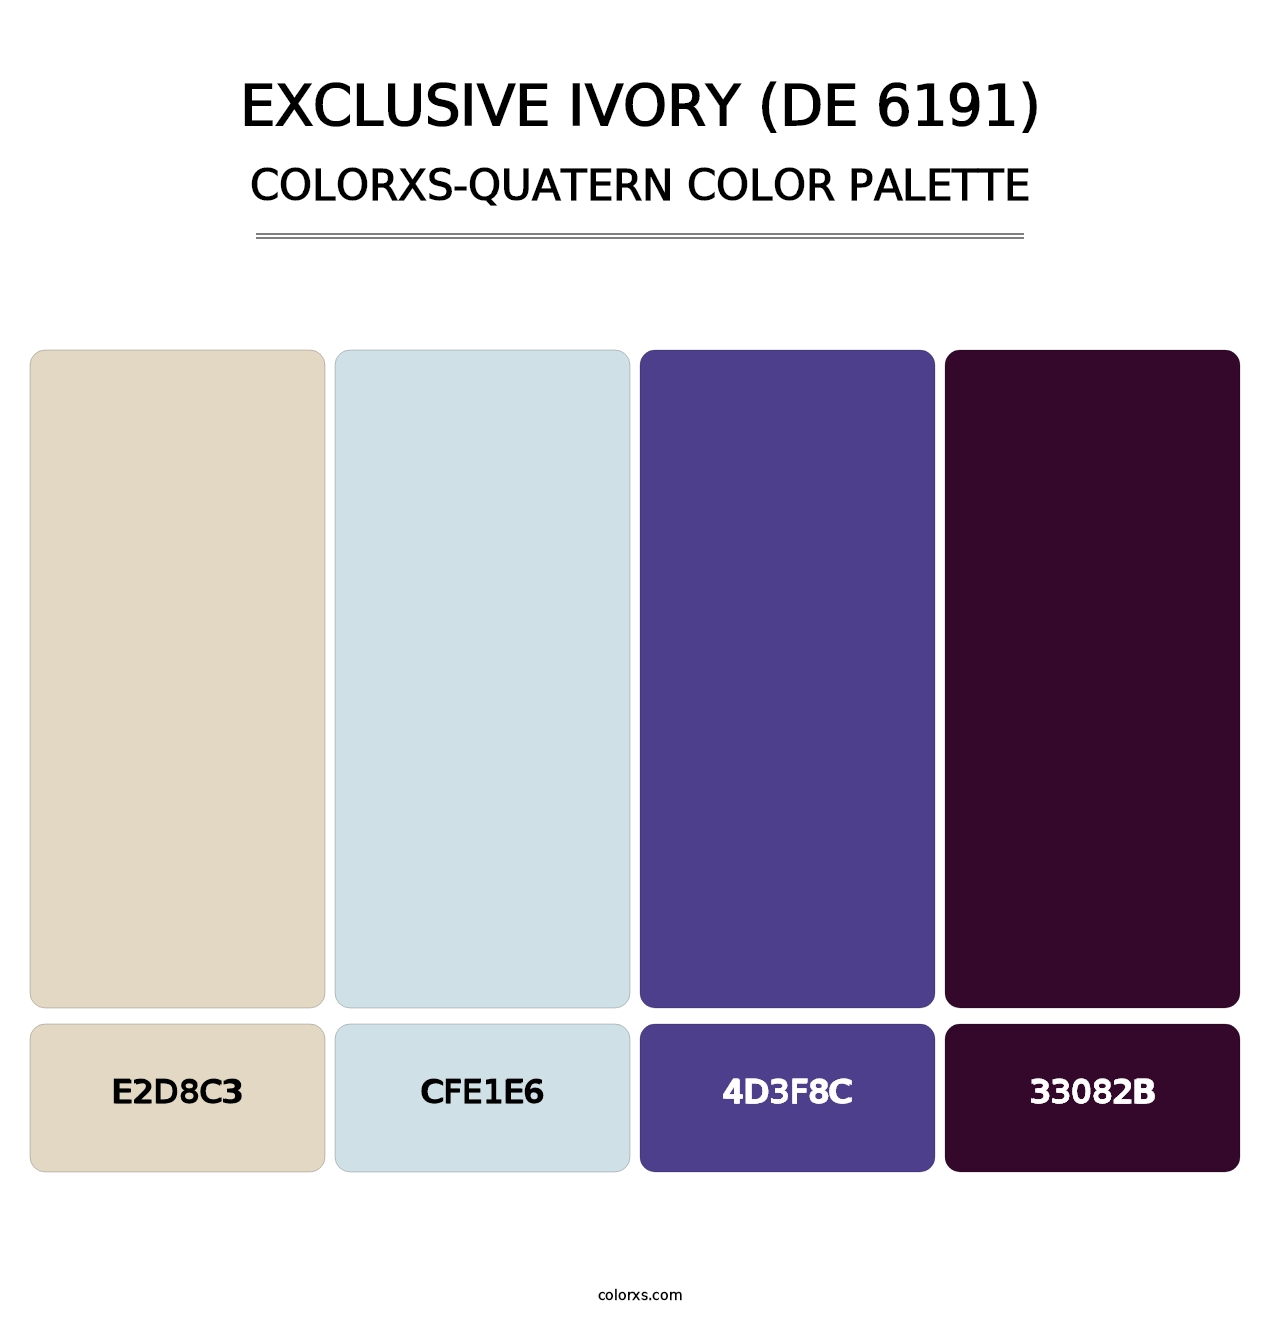 Exclusive Ivory (DE 6191) - Colorxs Quatern Palette